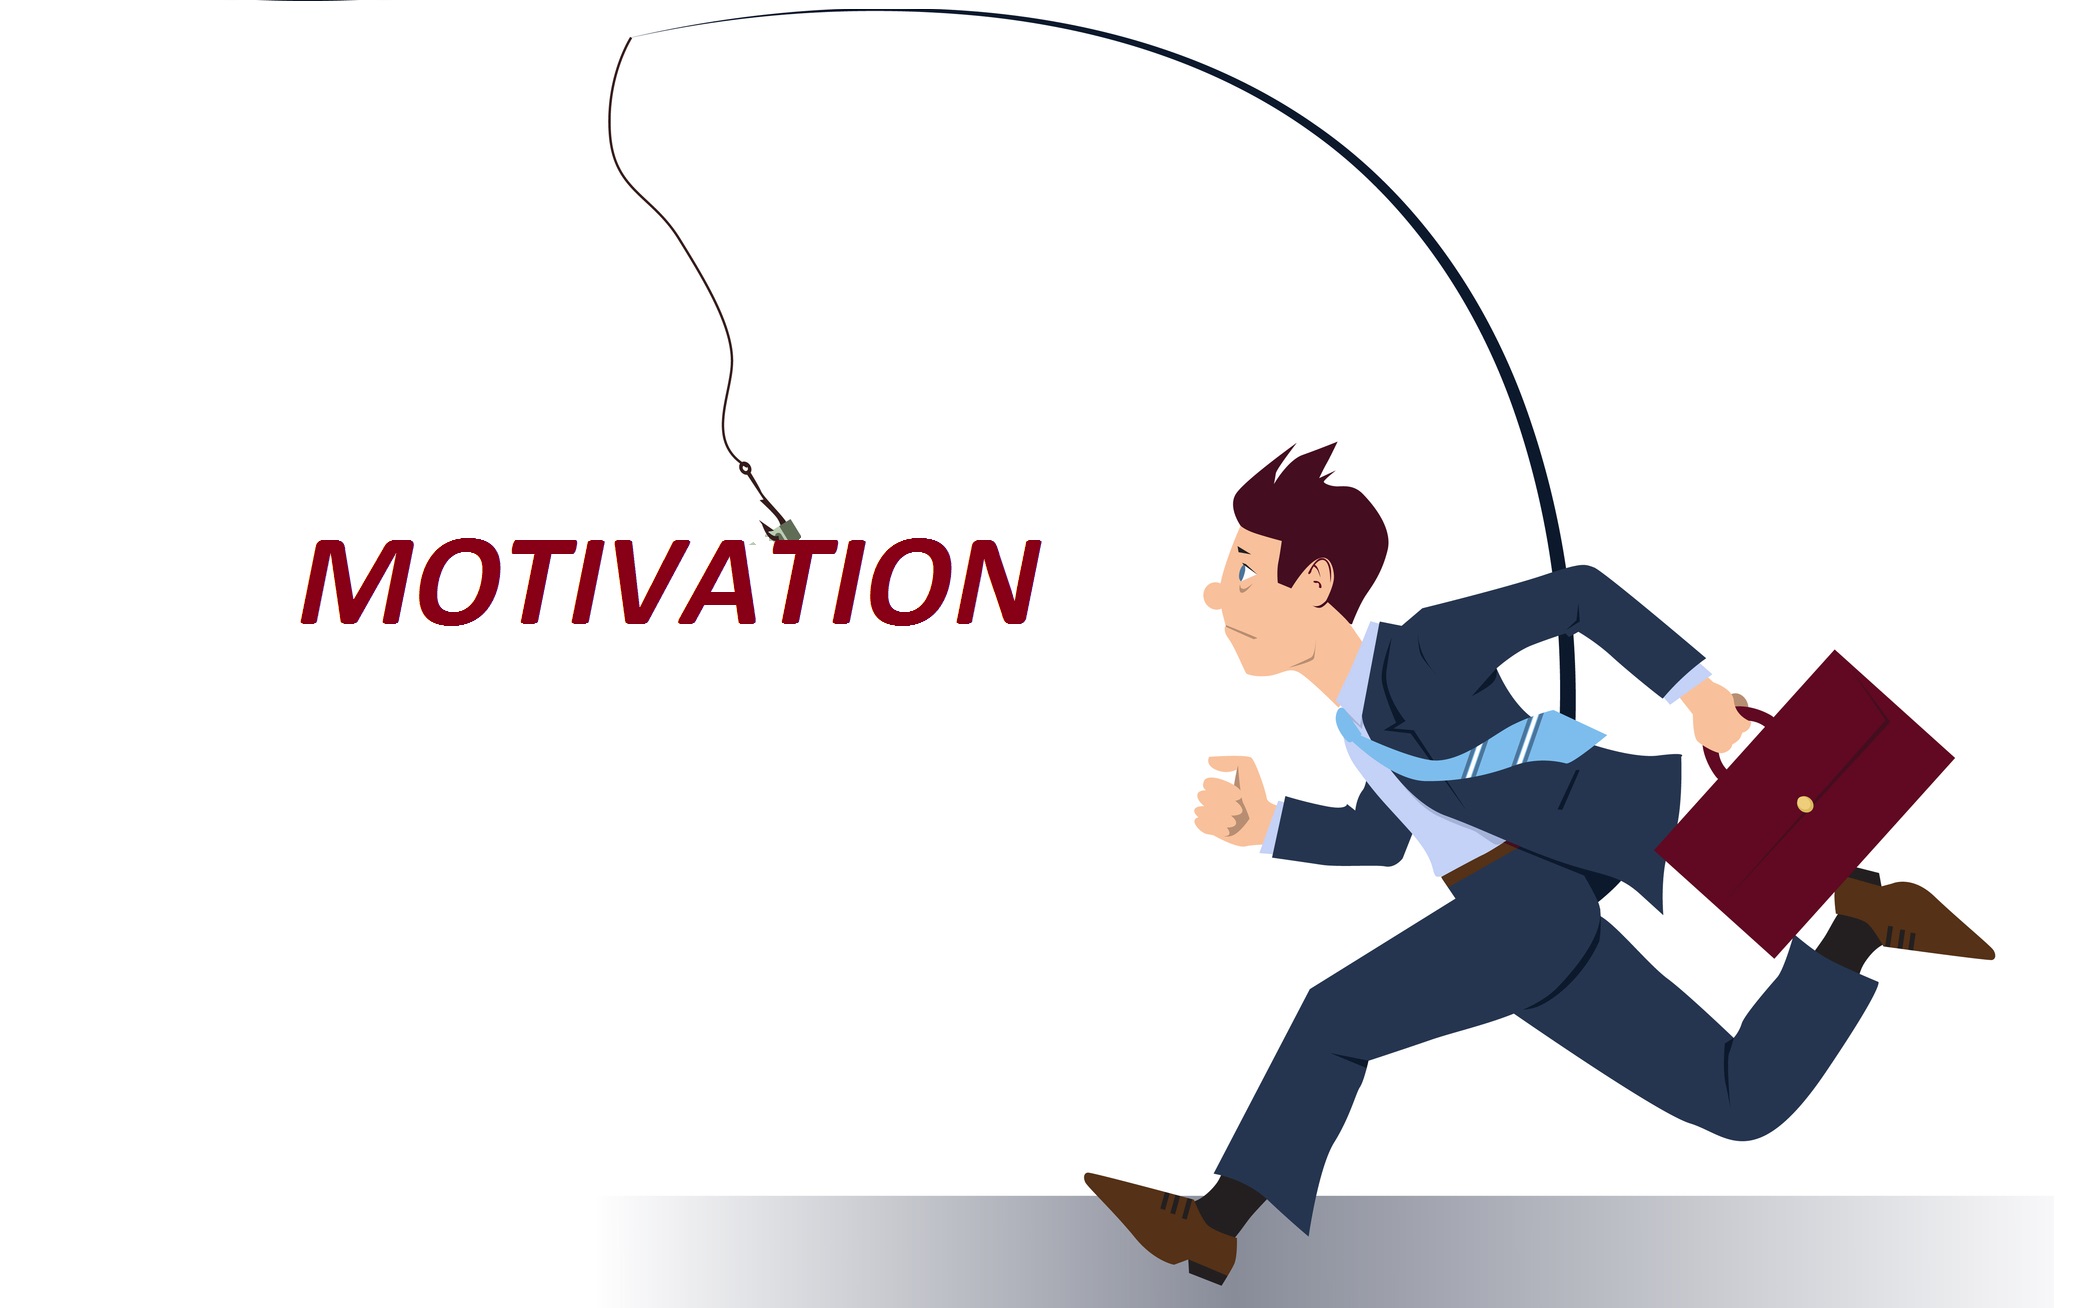 Мотивация и стимулирование персонала - основы управления персоналом (сычанина с.н., 2020)